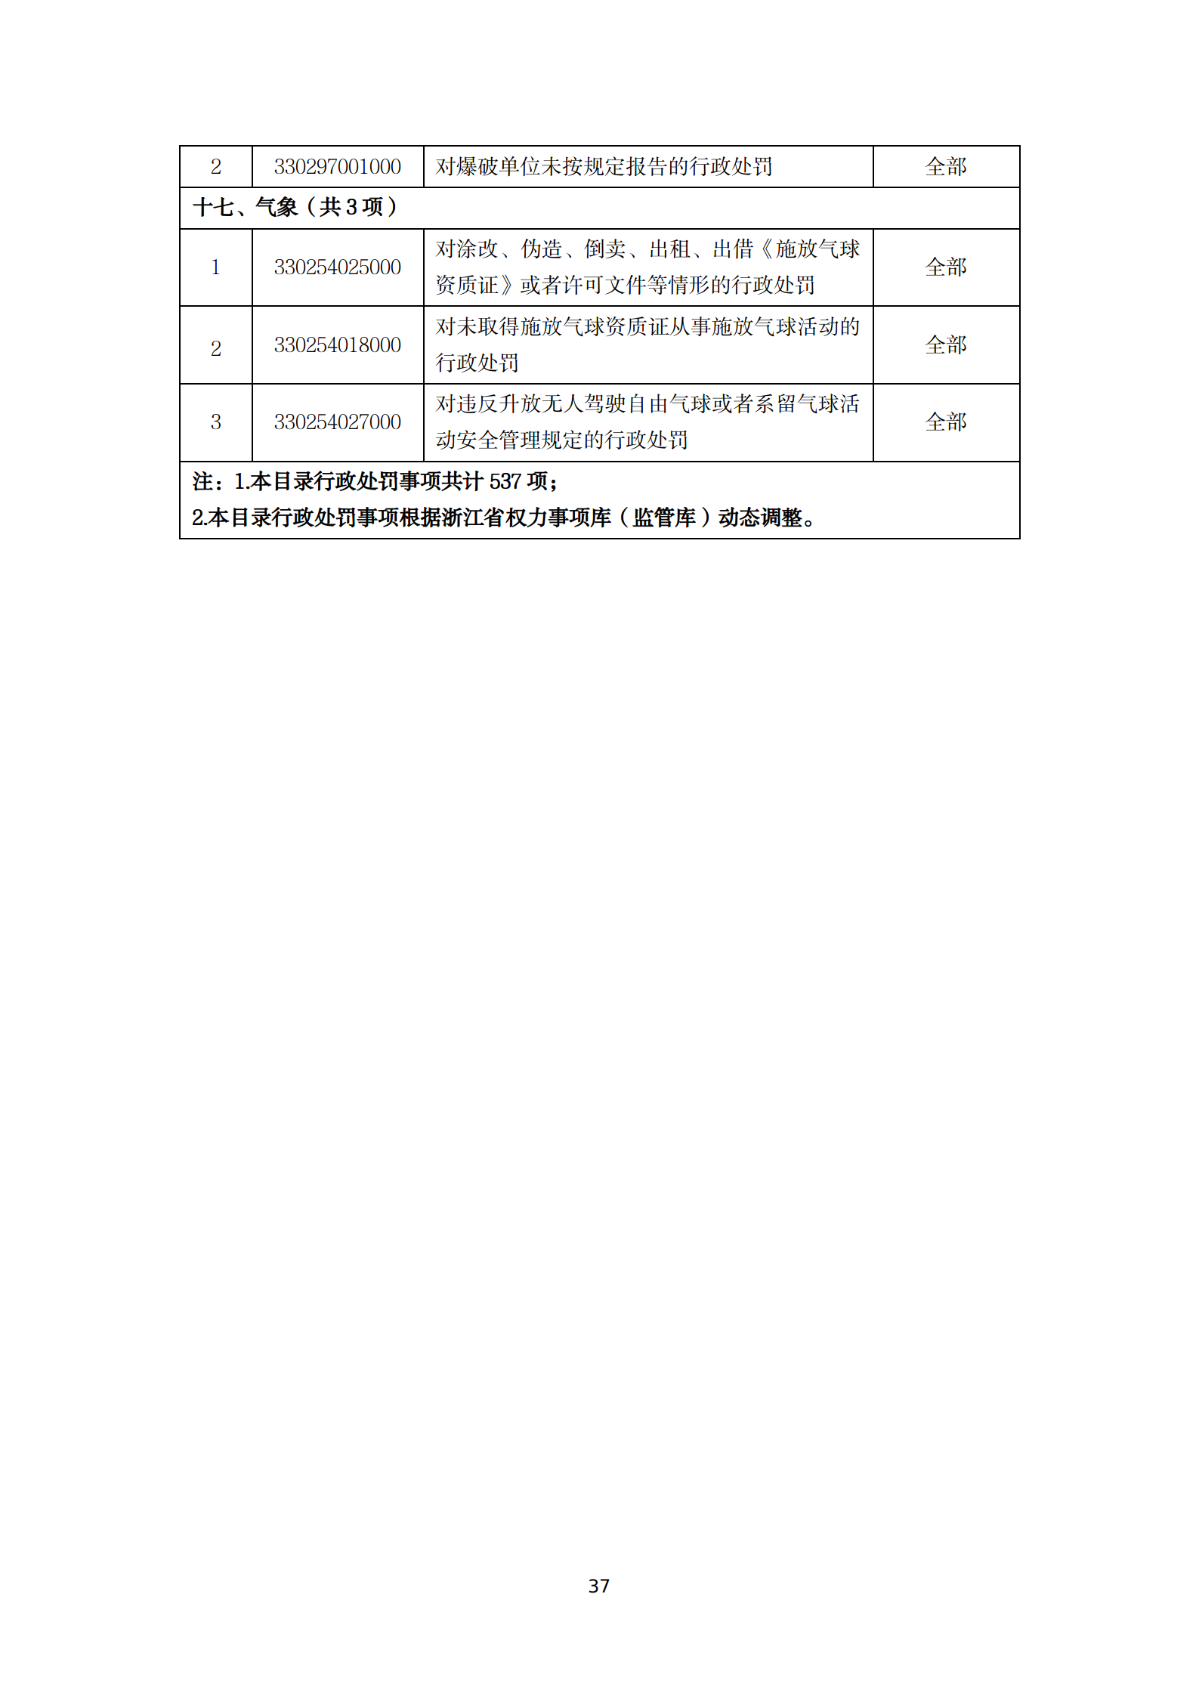 附件东阳市南马镇人民政府相对集中行使行政处罚事项目录（2020年）_37.png